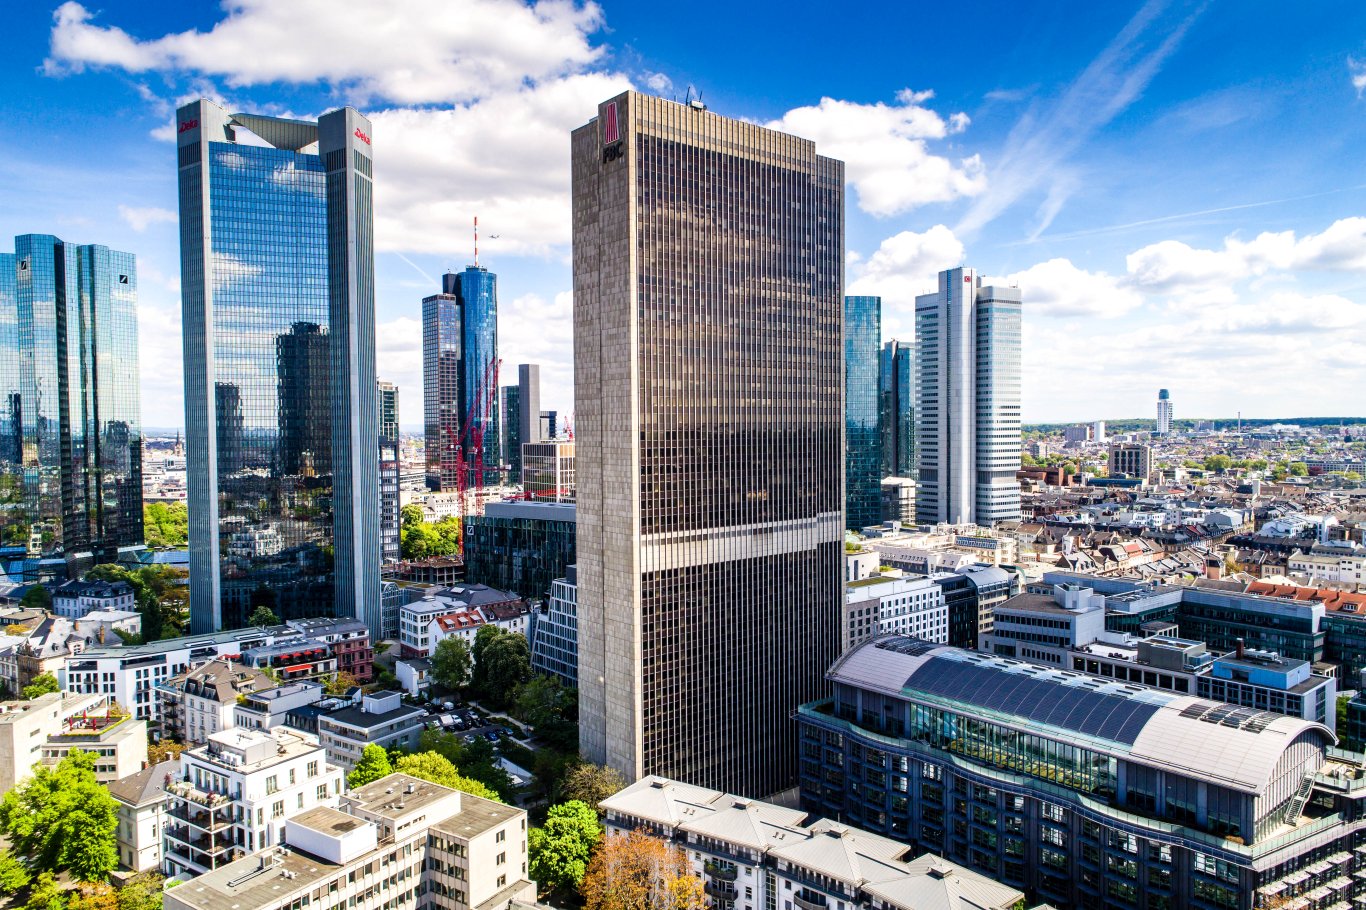 15 Jahre Erfahrung in der Projektsteuerung am Immobilienmarkt in Frankfurt und dem Rhein-Main-Gebiet.